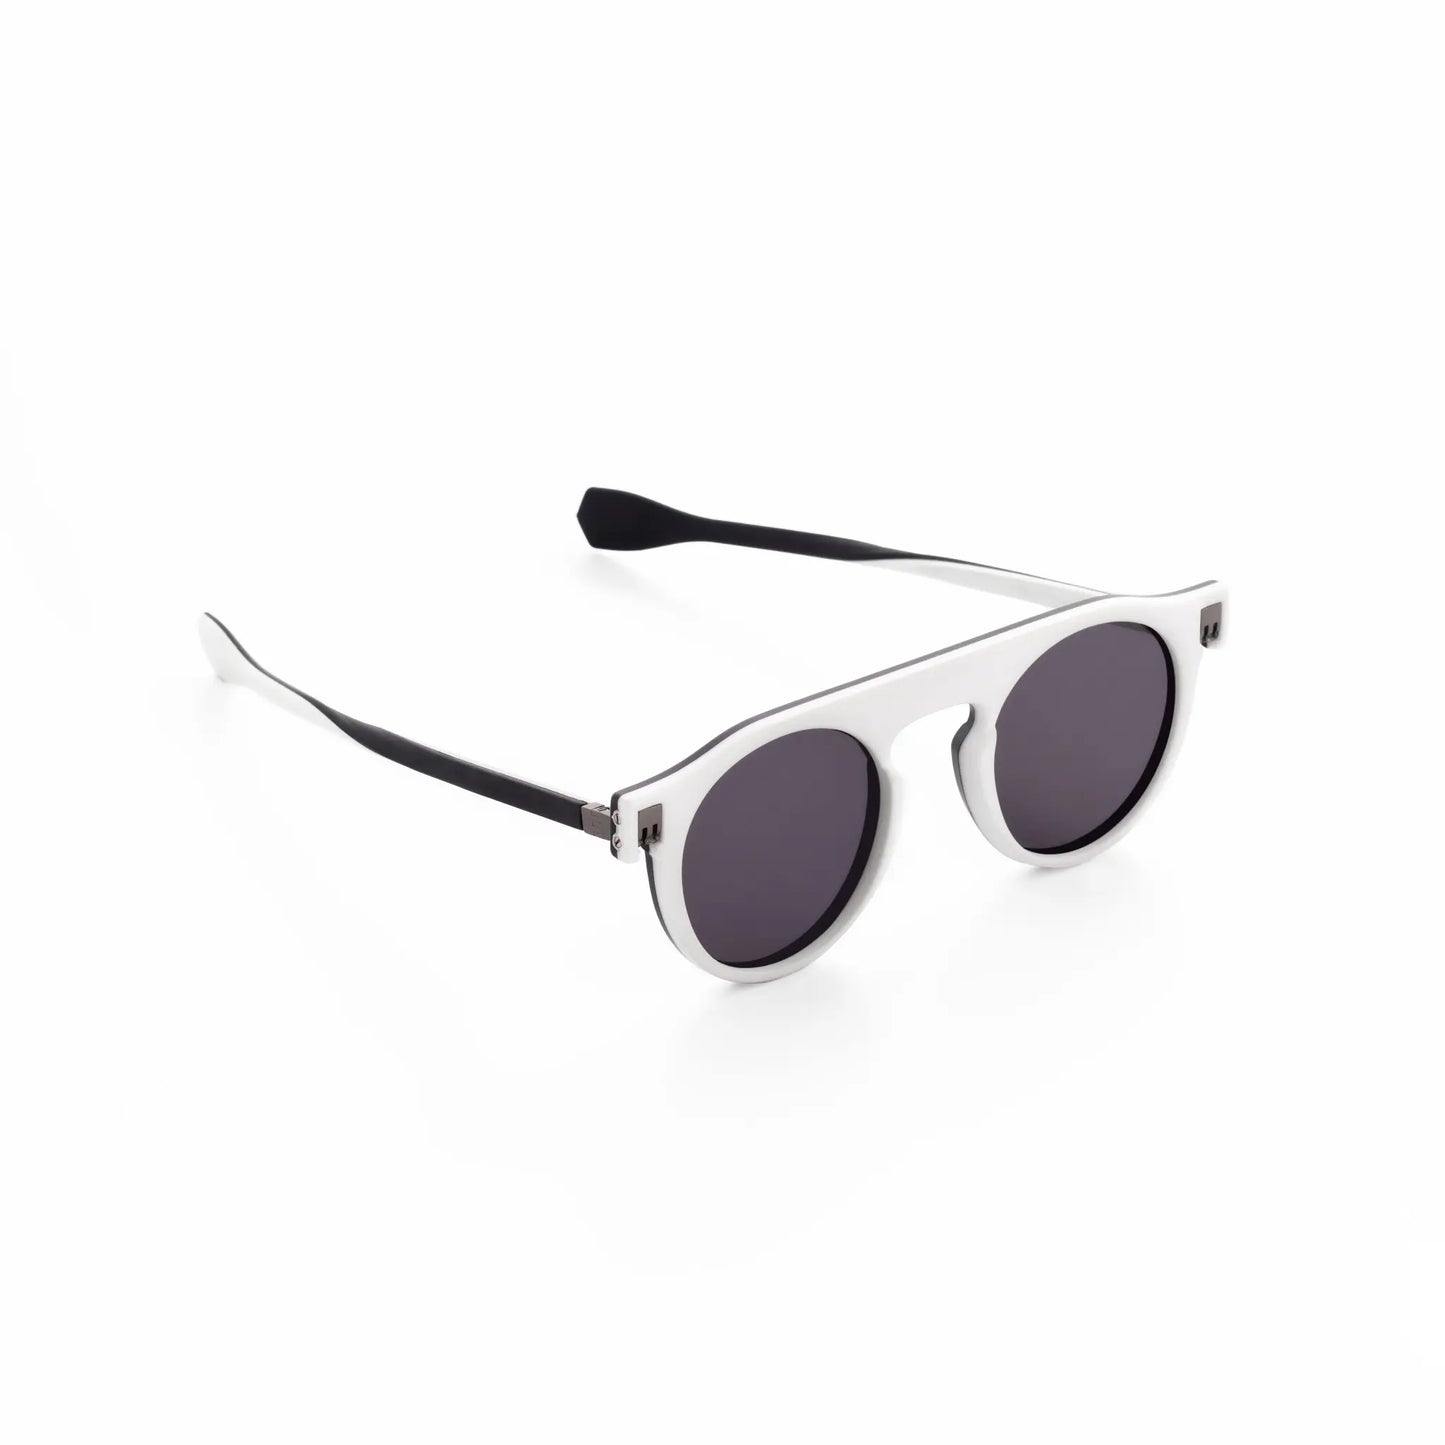 Reverso sunglasses black & white reversible & ultra light side view 1